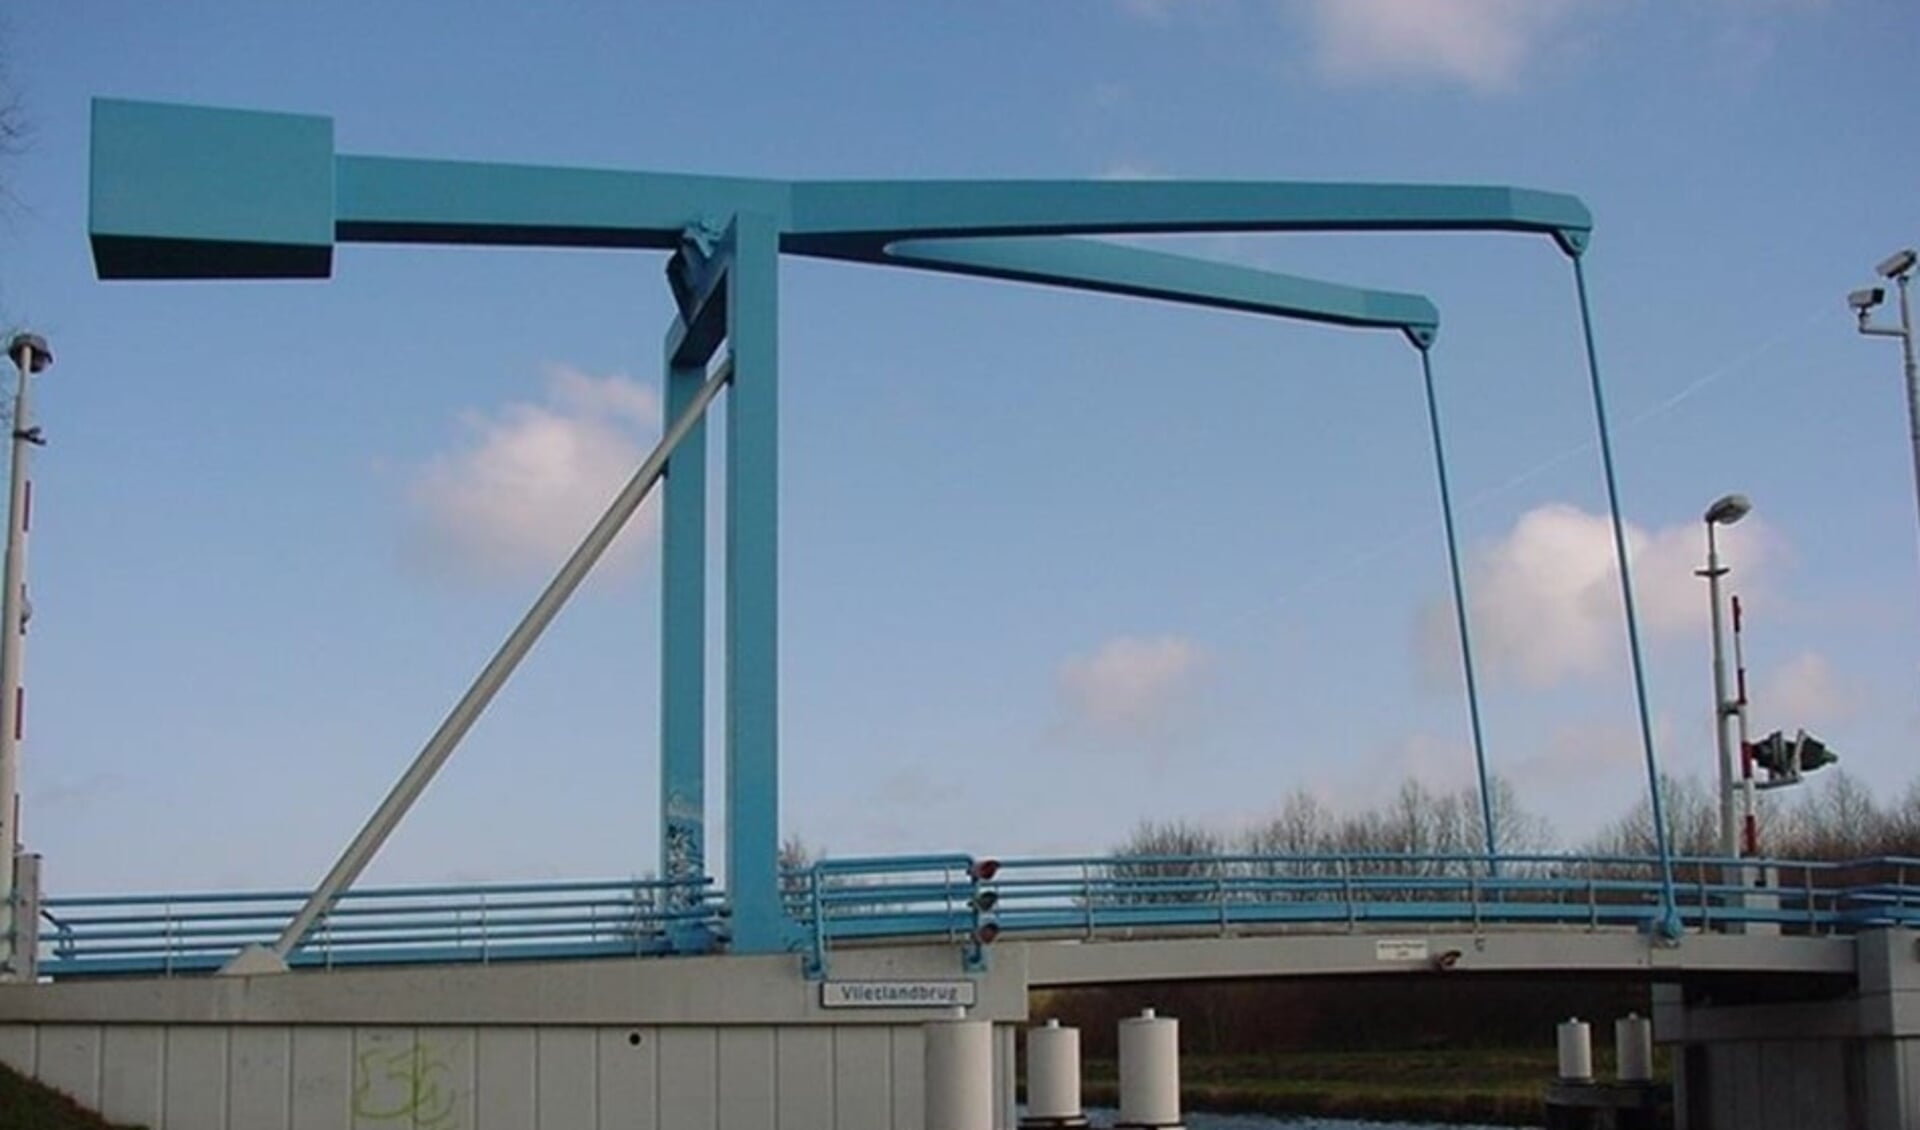 De Vlietlandbrug heeft als bijnaam 'De blauwe brug', omdat de brug vroeger een blauwe kleur had. Dit is een impressie van hoe de brug er weer uit komt te zien. Foto: Rijnland